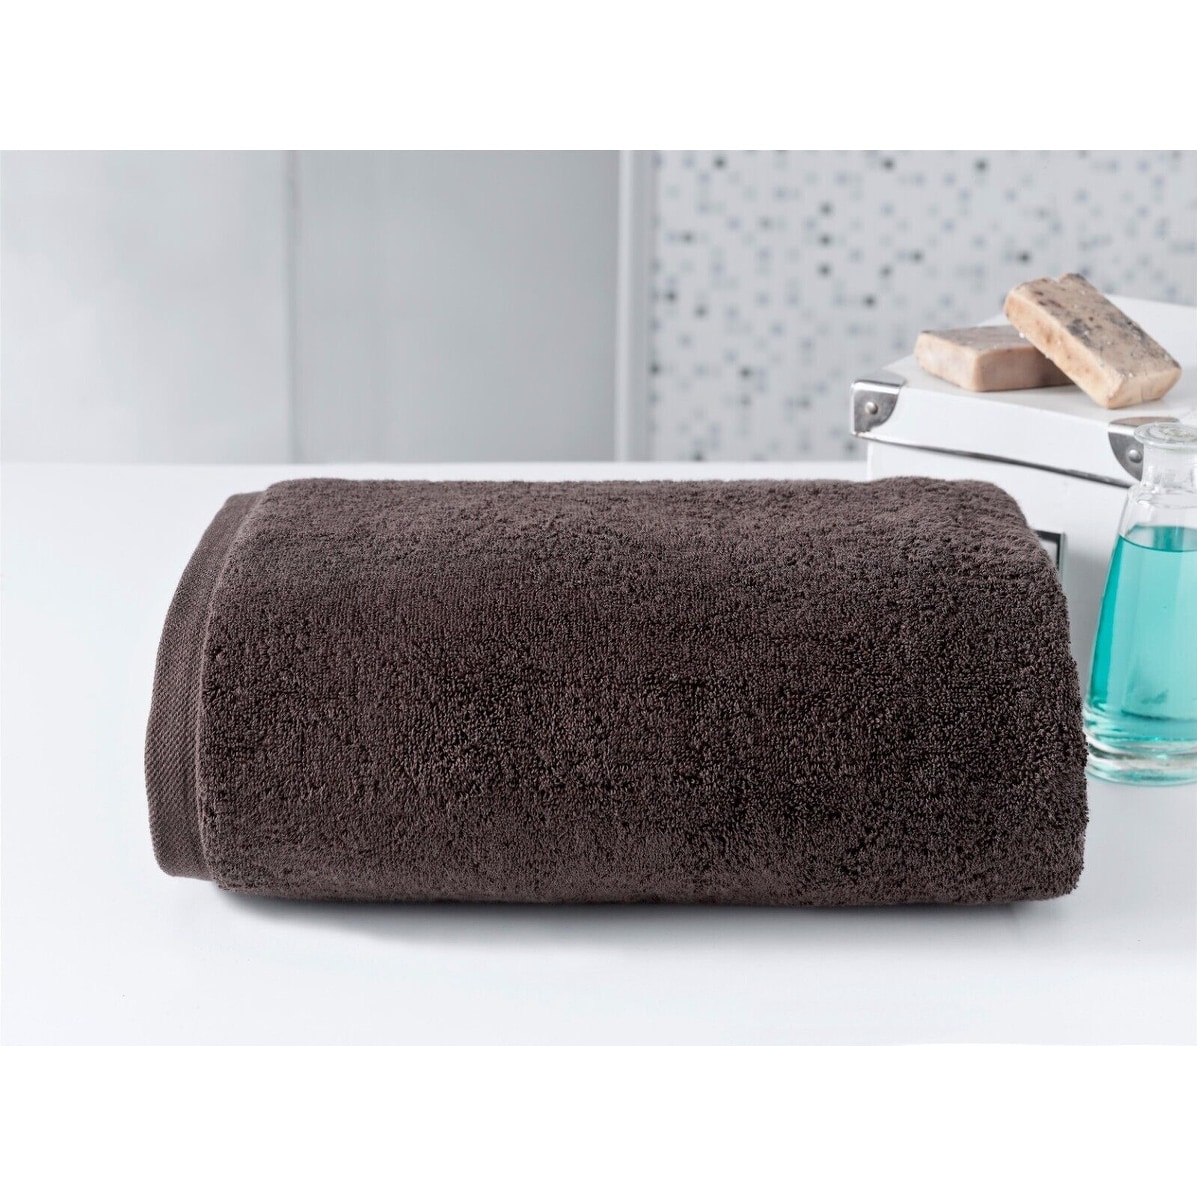 Cambridge Jumbo Pool Towel, 40 x 80 Luxury Hotel Towels